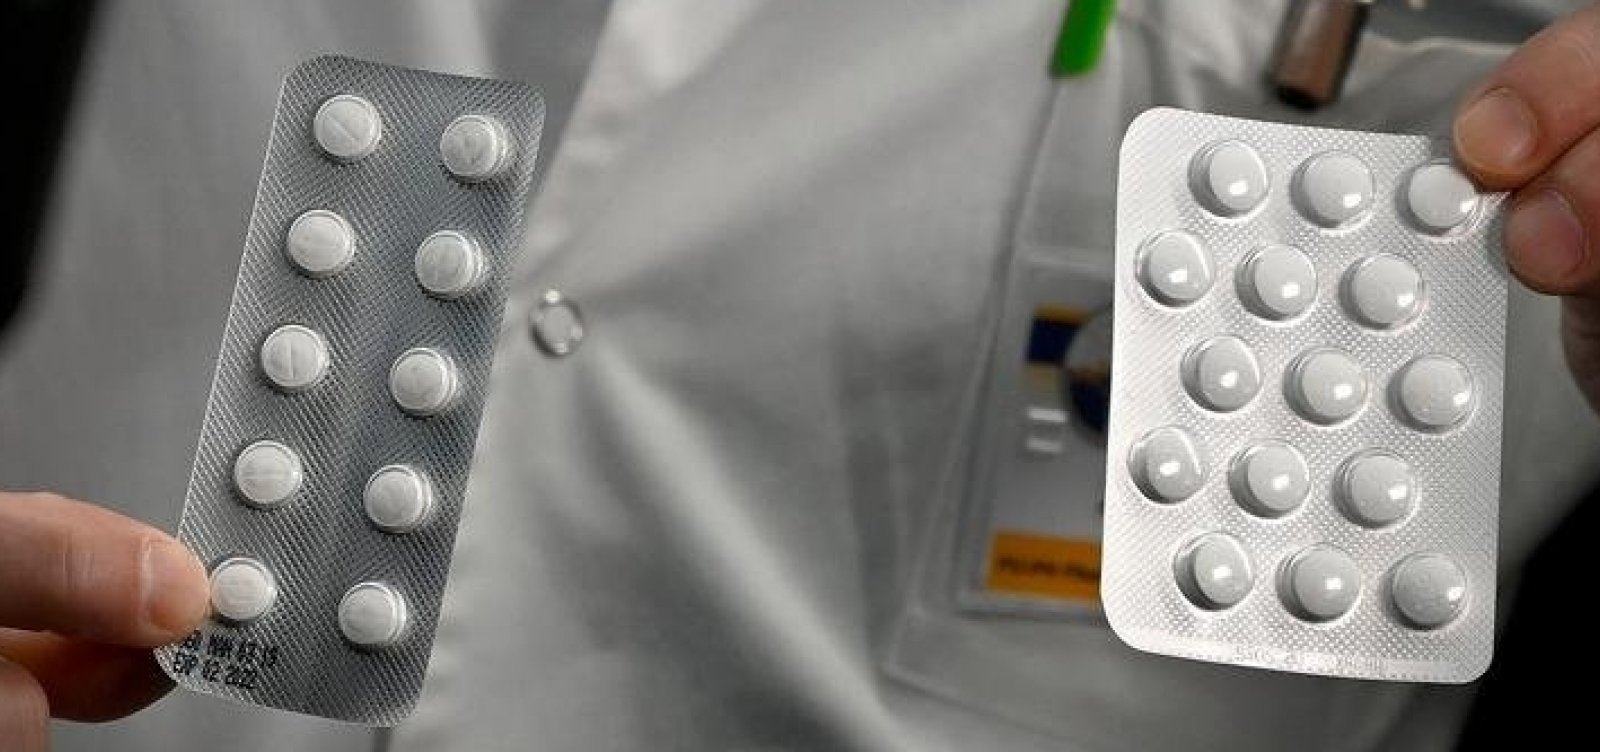 Escassez de medicamentos essenciais preocupa Anvisa e Ministério da Saúde